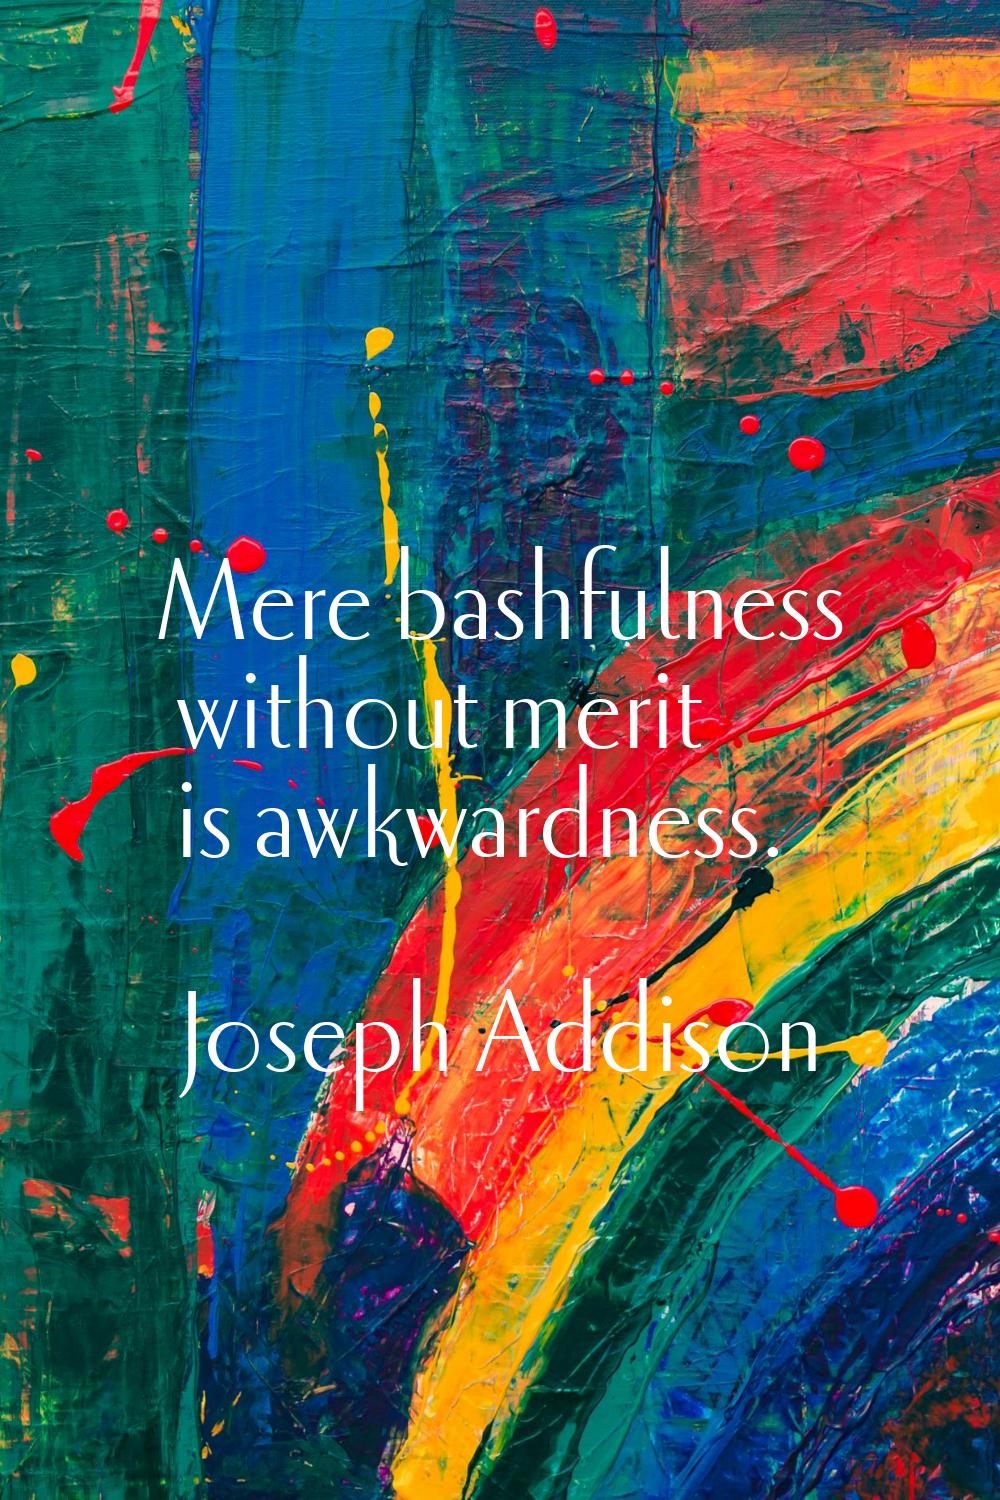 Mere bashfulness without merit is awkwardness.